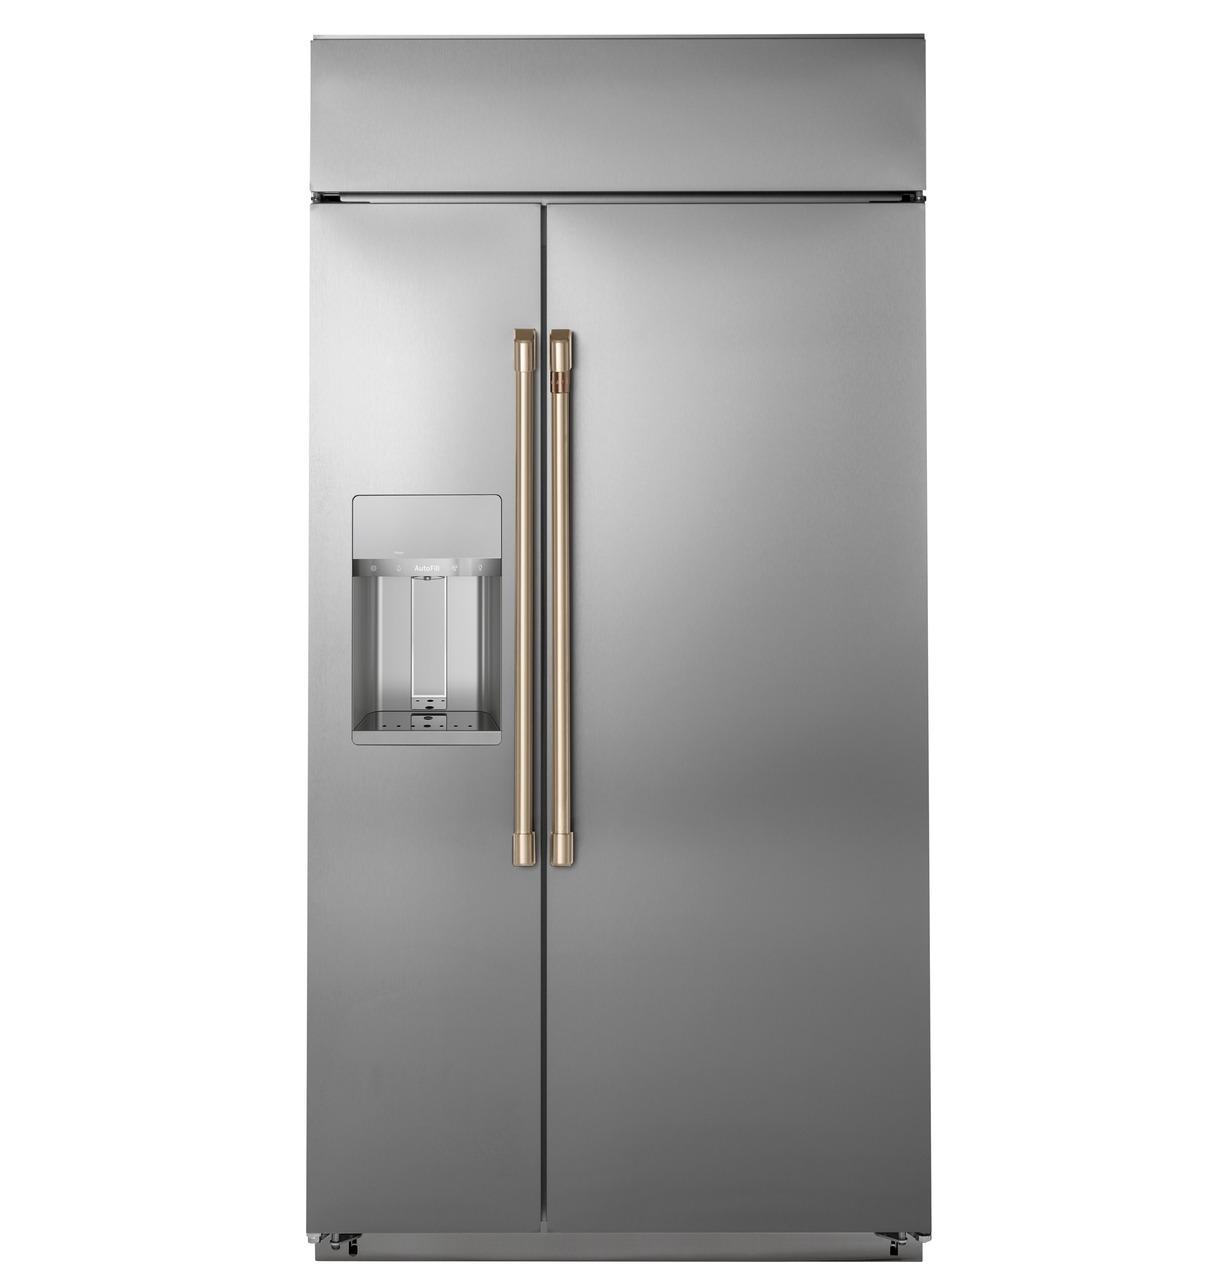 Cafe Caf(eback)™ 48" Smart Built-In Side-by-Side Refrigerator with Dispenser